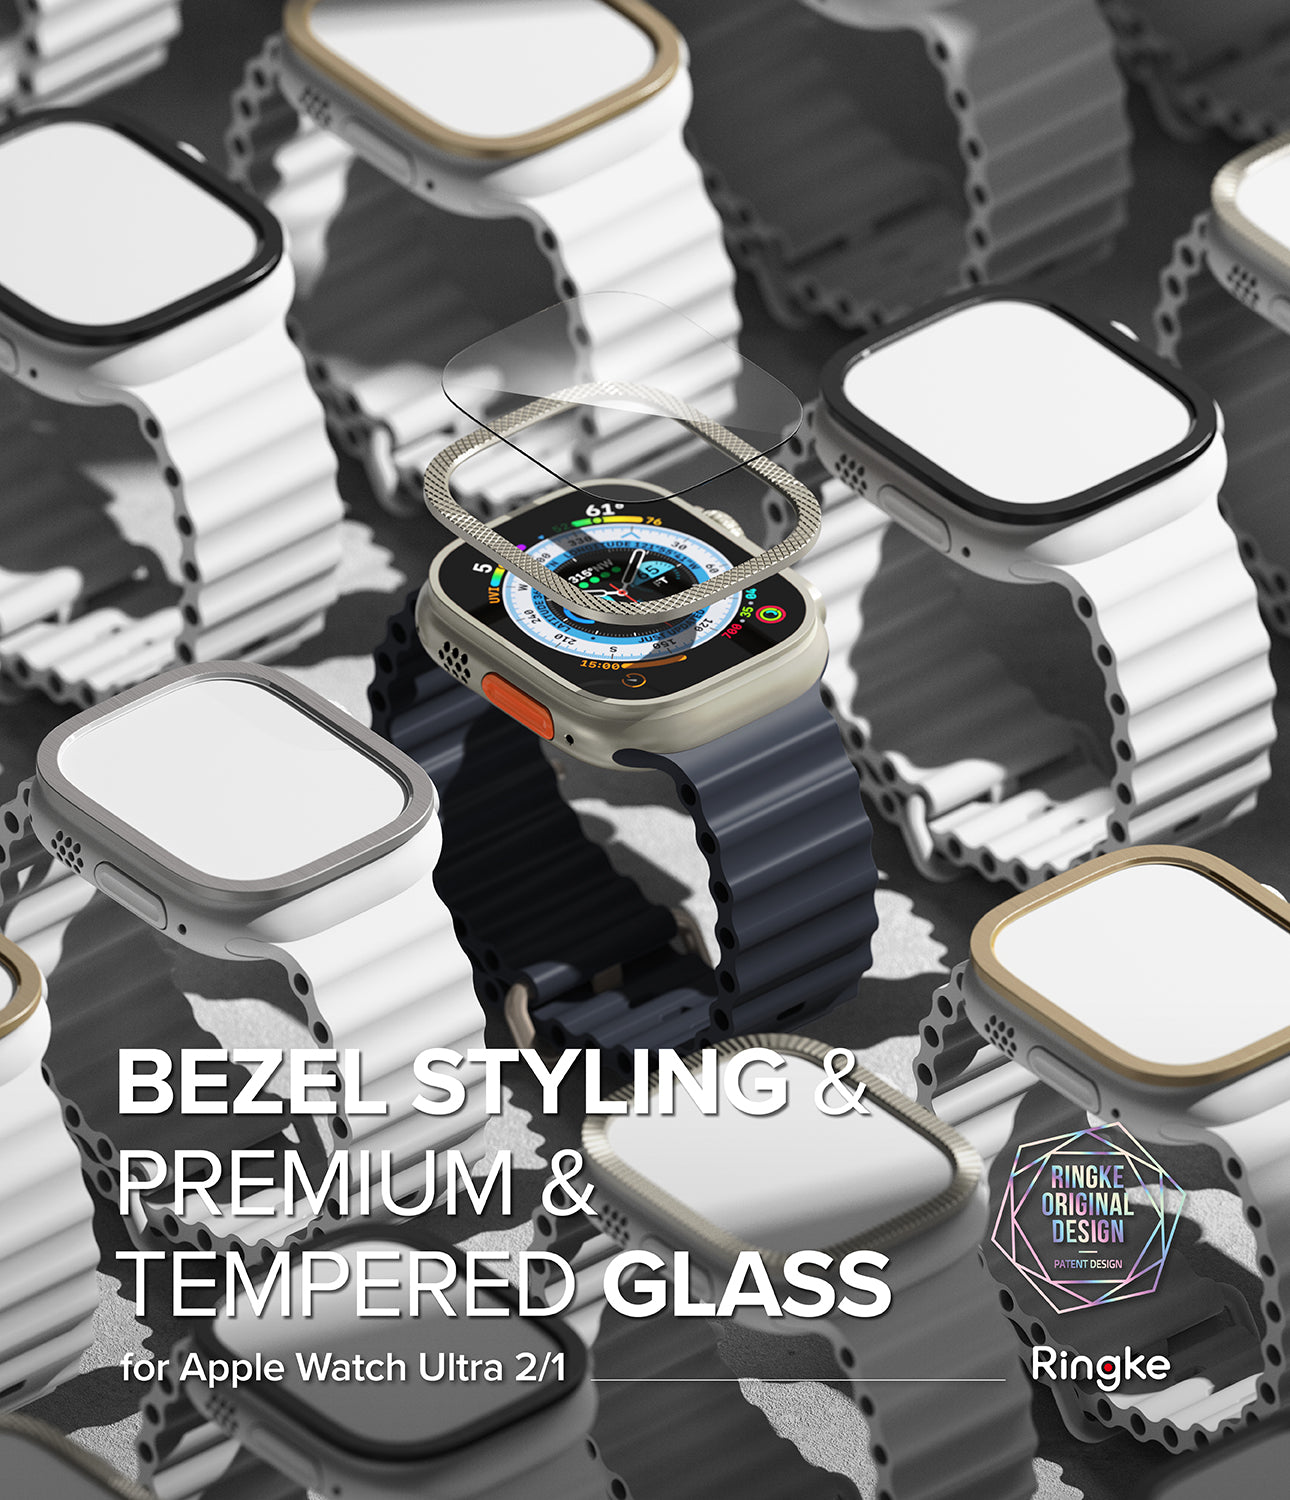 Apple Watch Ultra 2 / 1 | Glass + Bezel Styling 49-48 - By Ringke